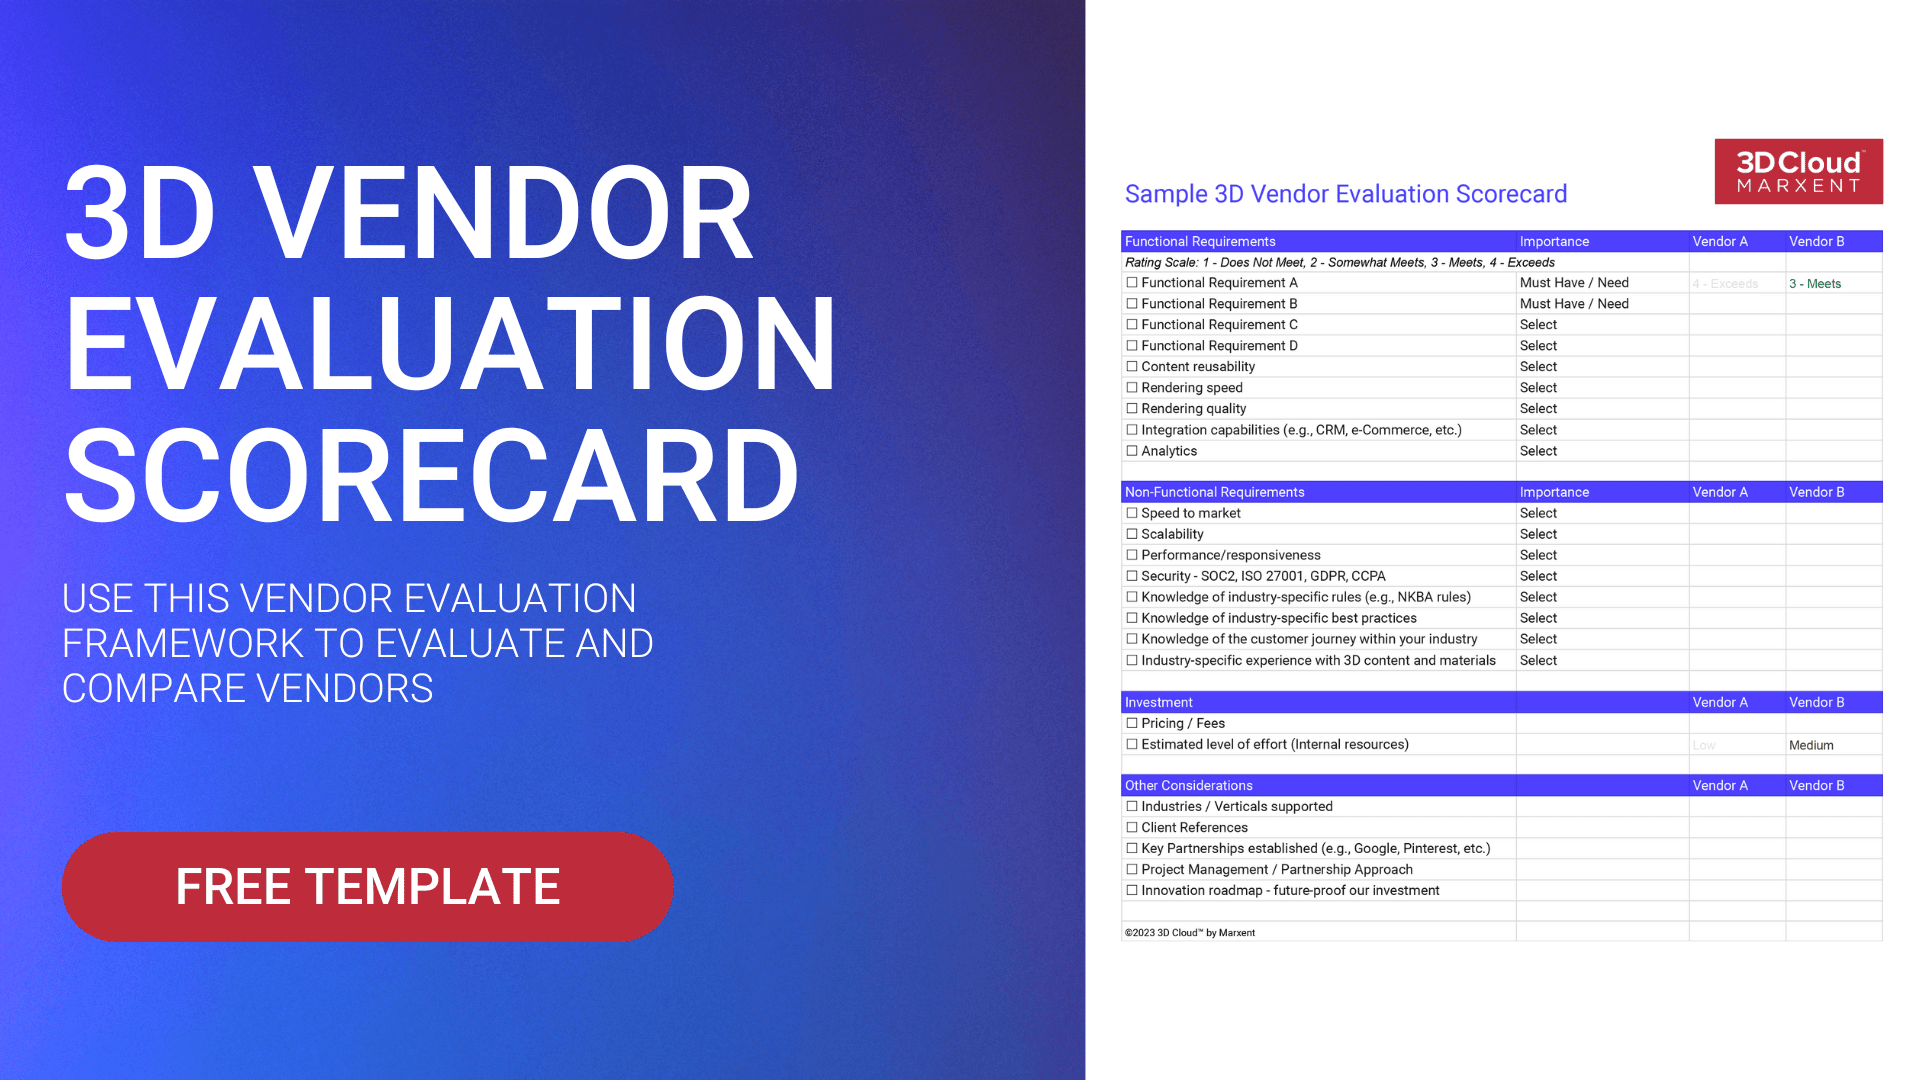 3D Vendor Evaluation Scorecard - Free Template